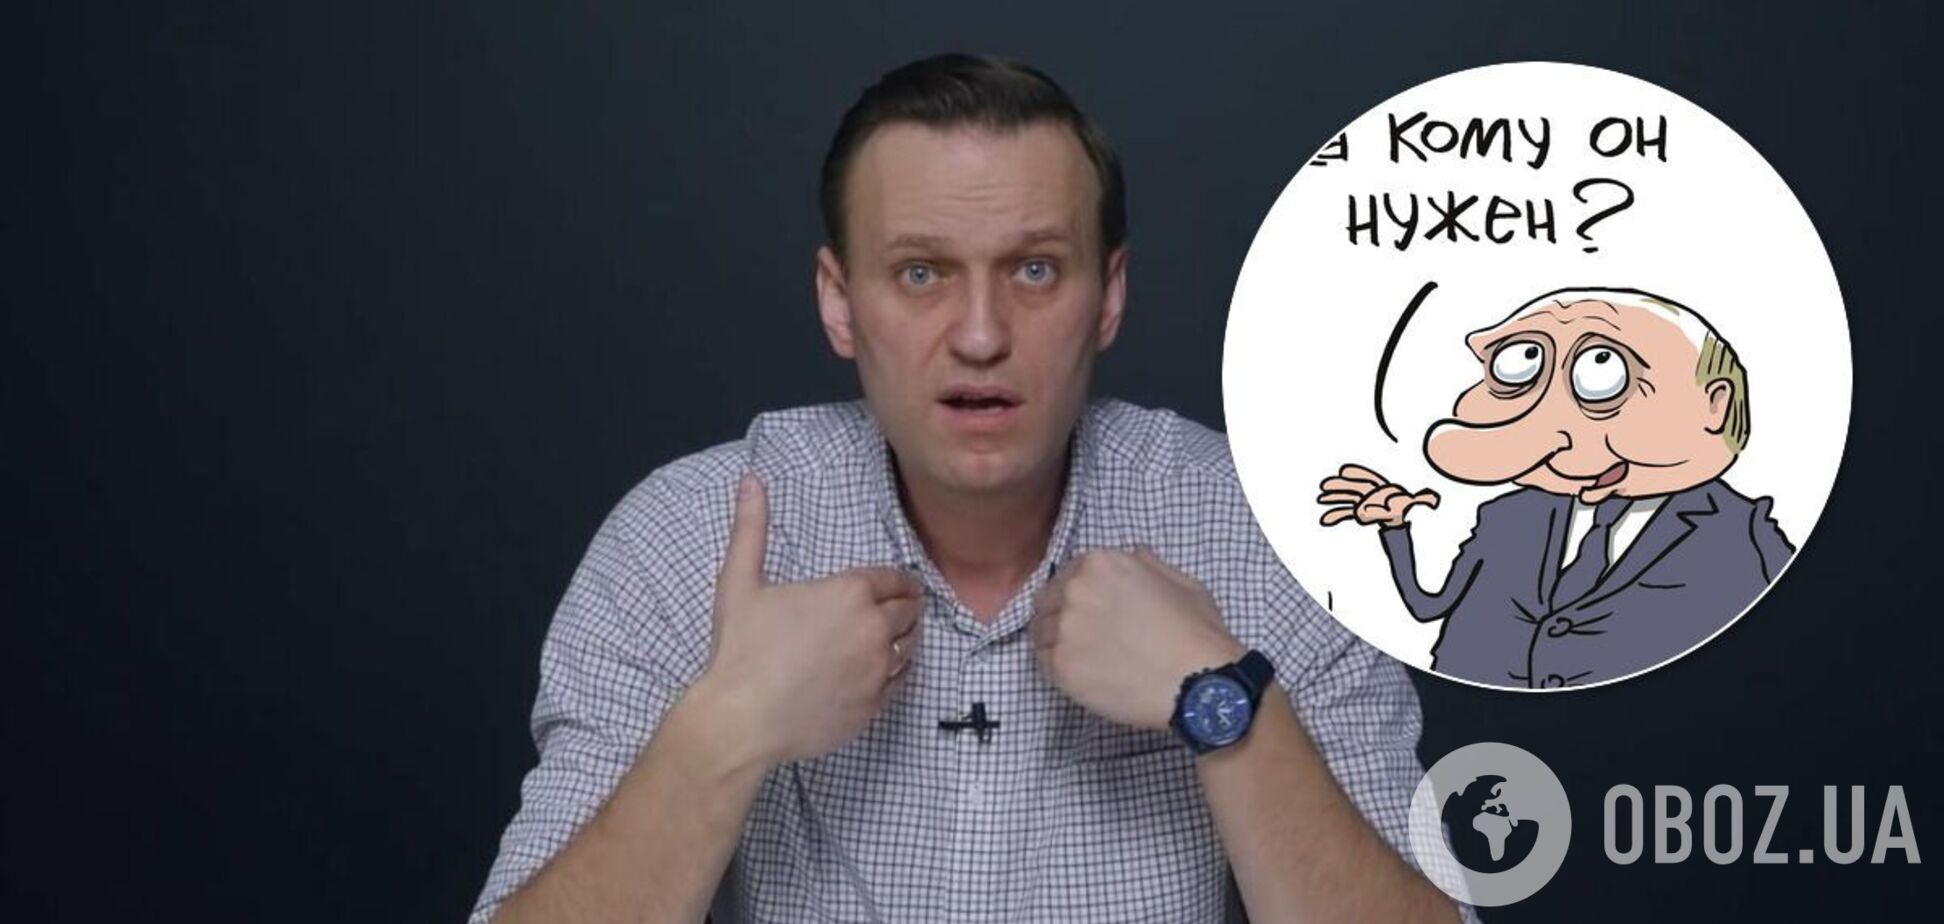 Сеть отреагировала на арест Навального мэмами с Путиным